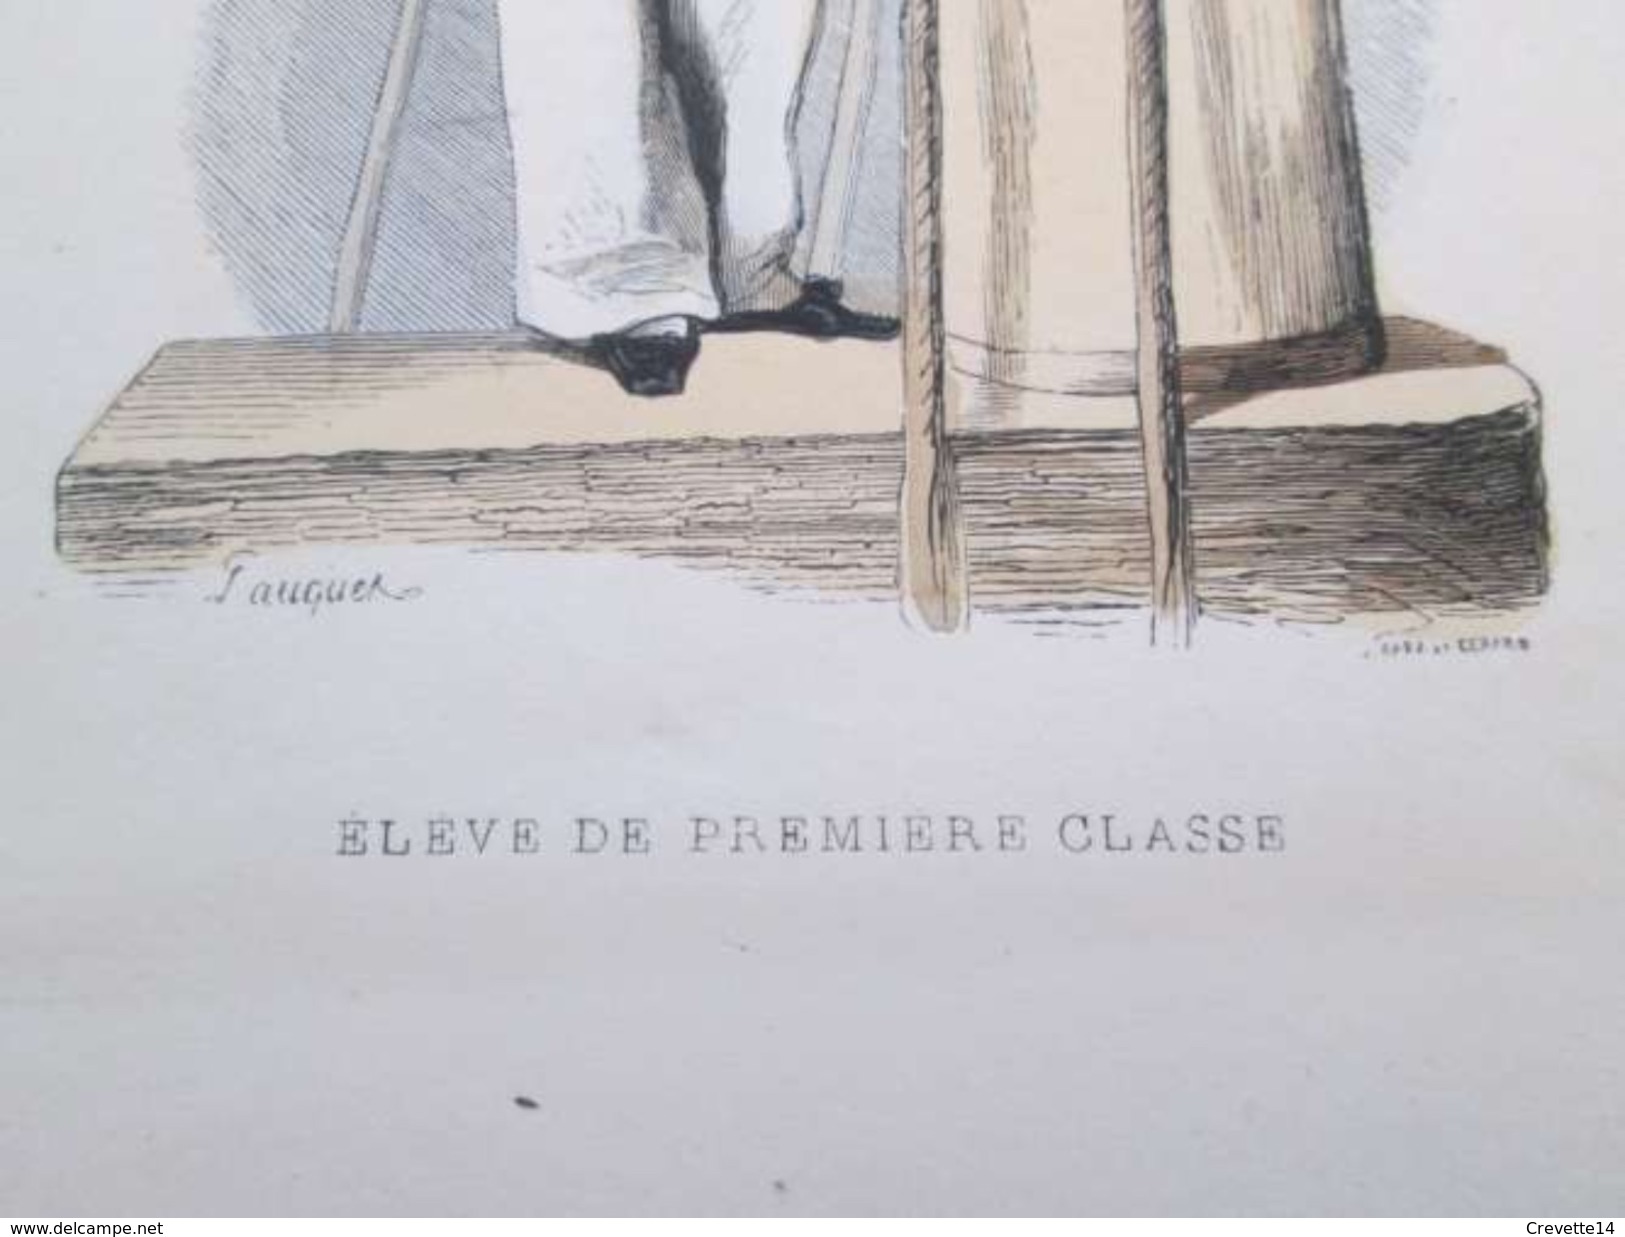 Gravure Fin 19e Siècle Représentant Un ELEVE DE PREMIERE CLASSE De La Marine Française, Peut être D'époque Napoleon III - Bateaux